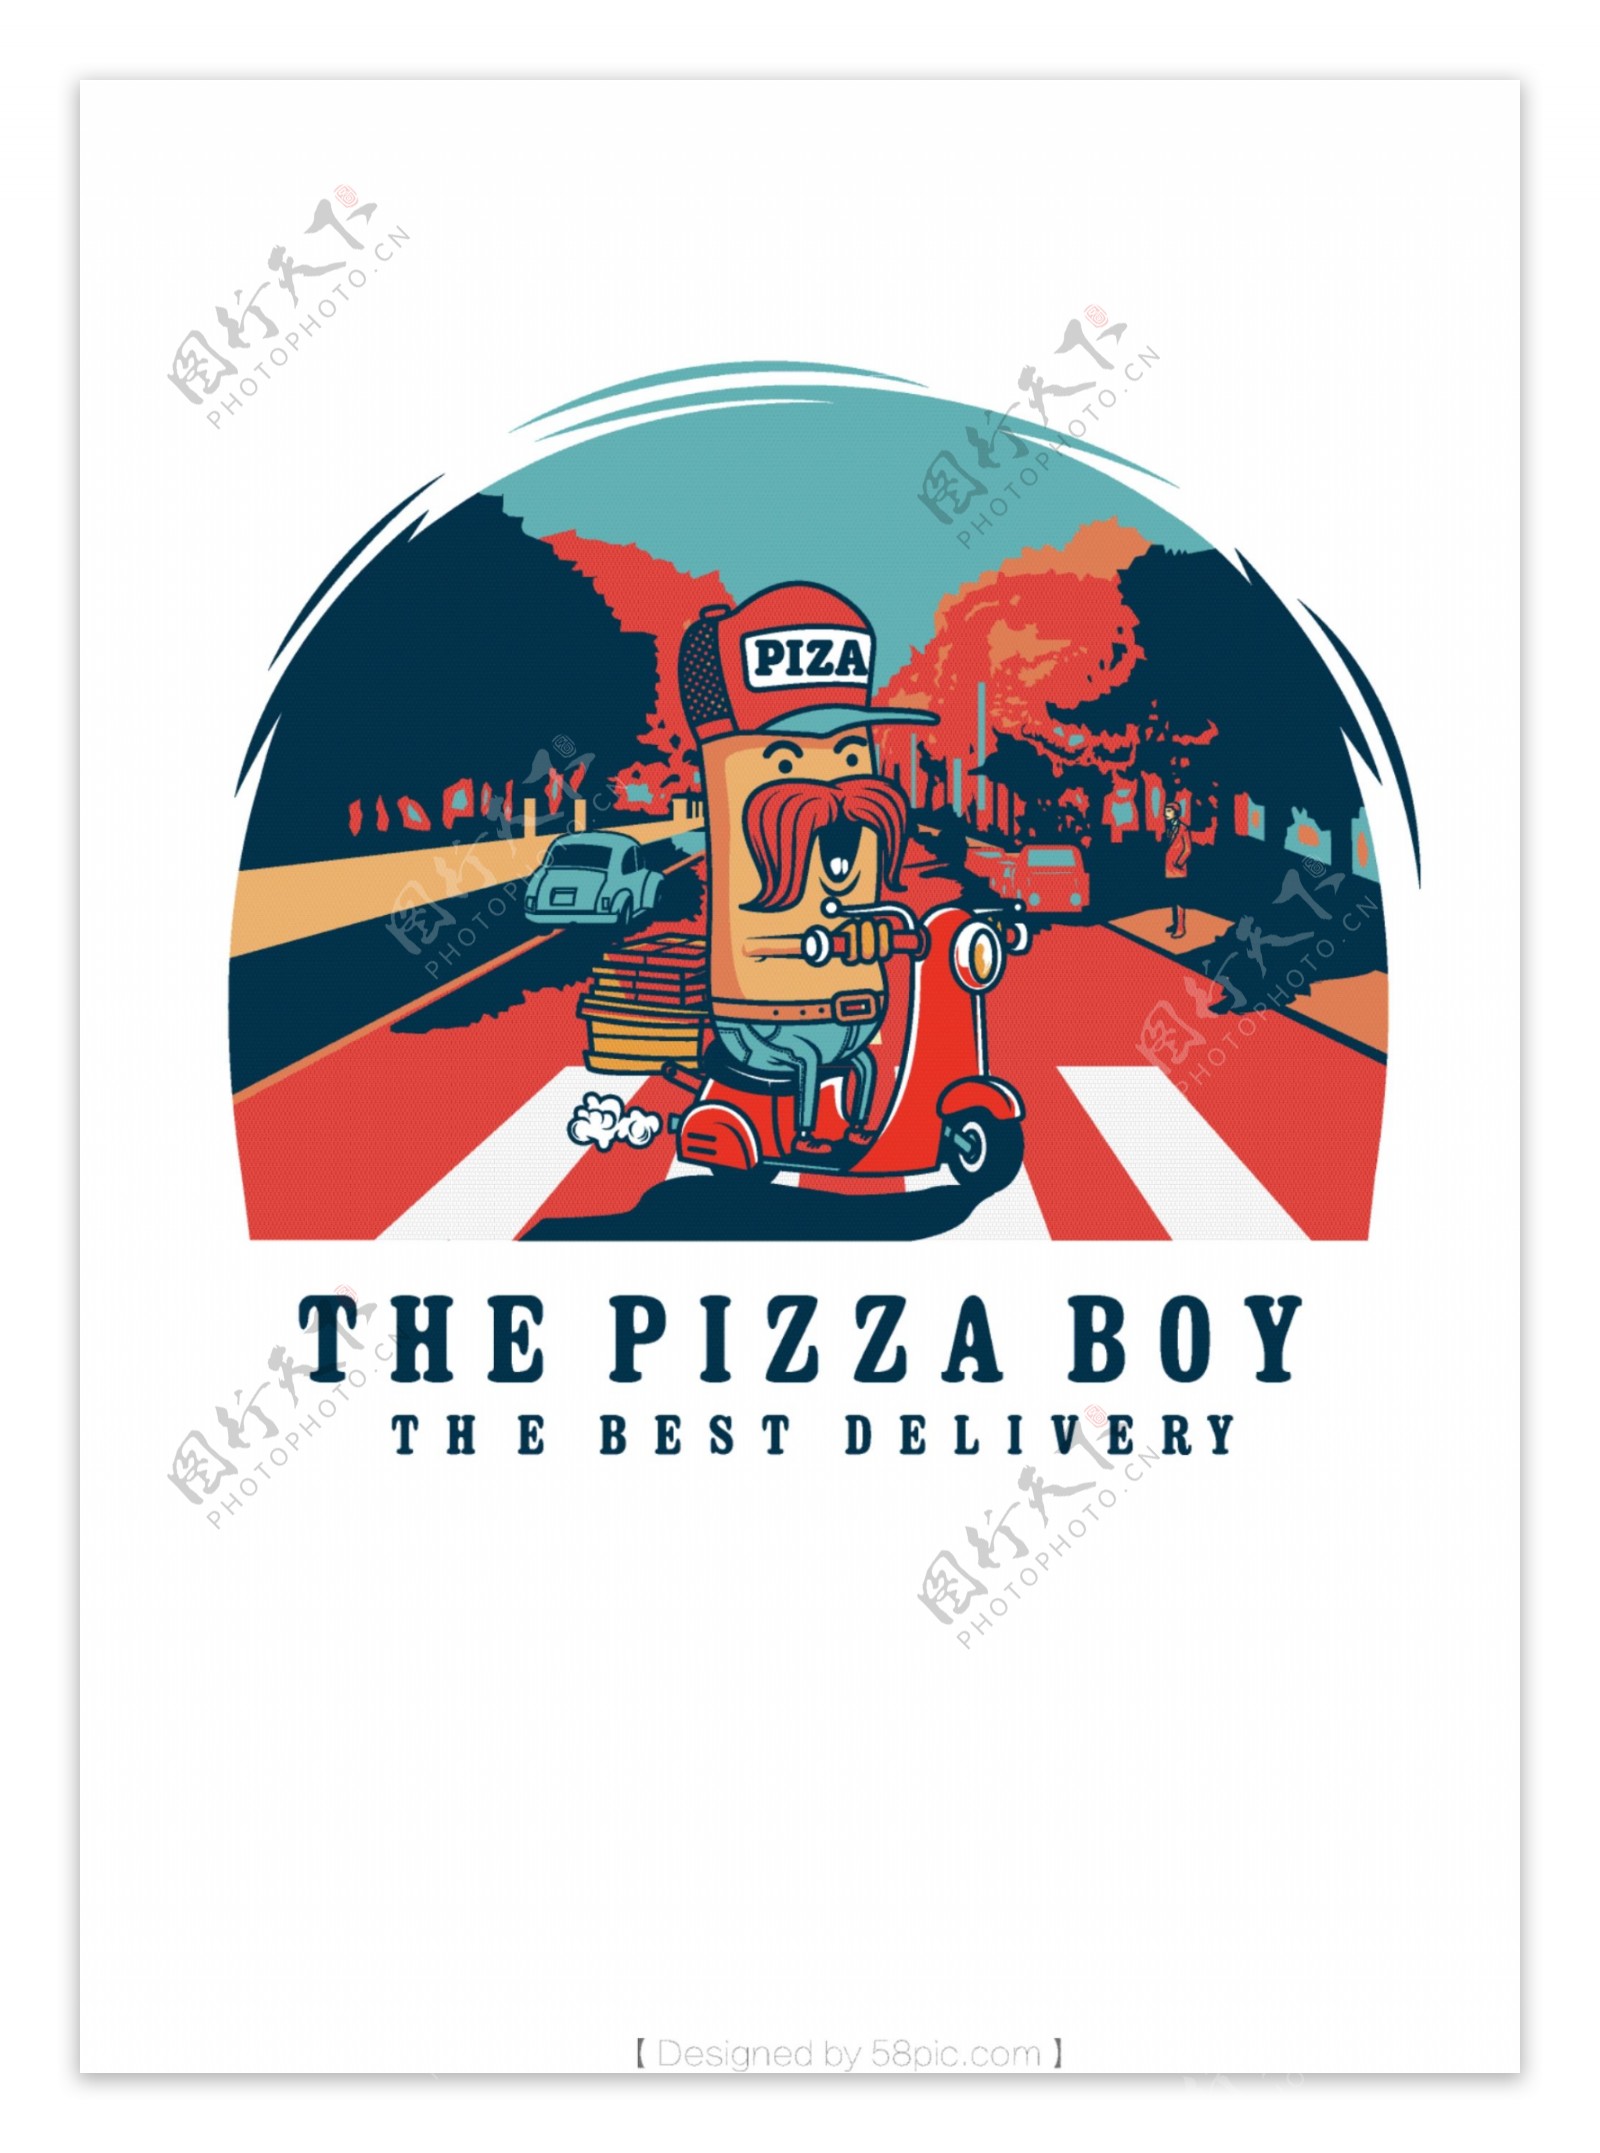 原创披萨快送员创意矢量插画